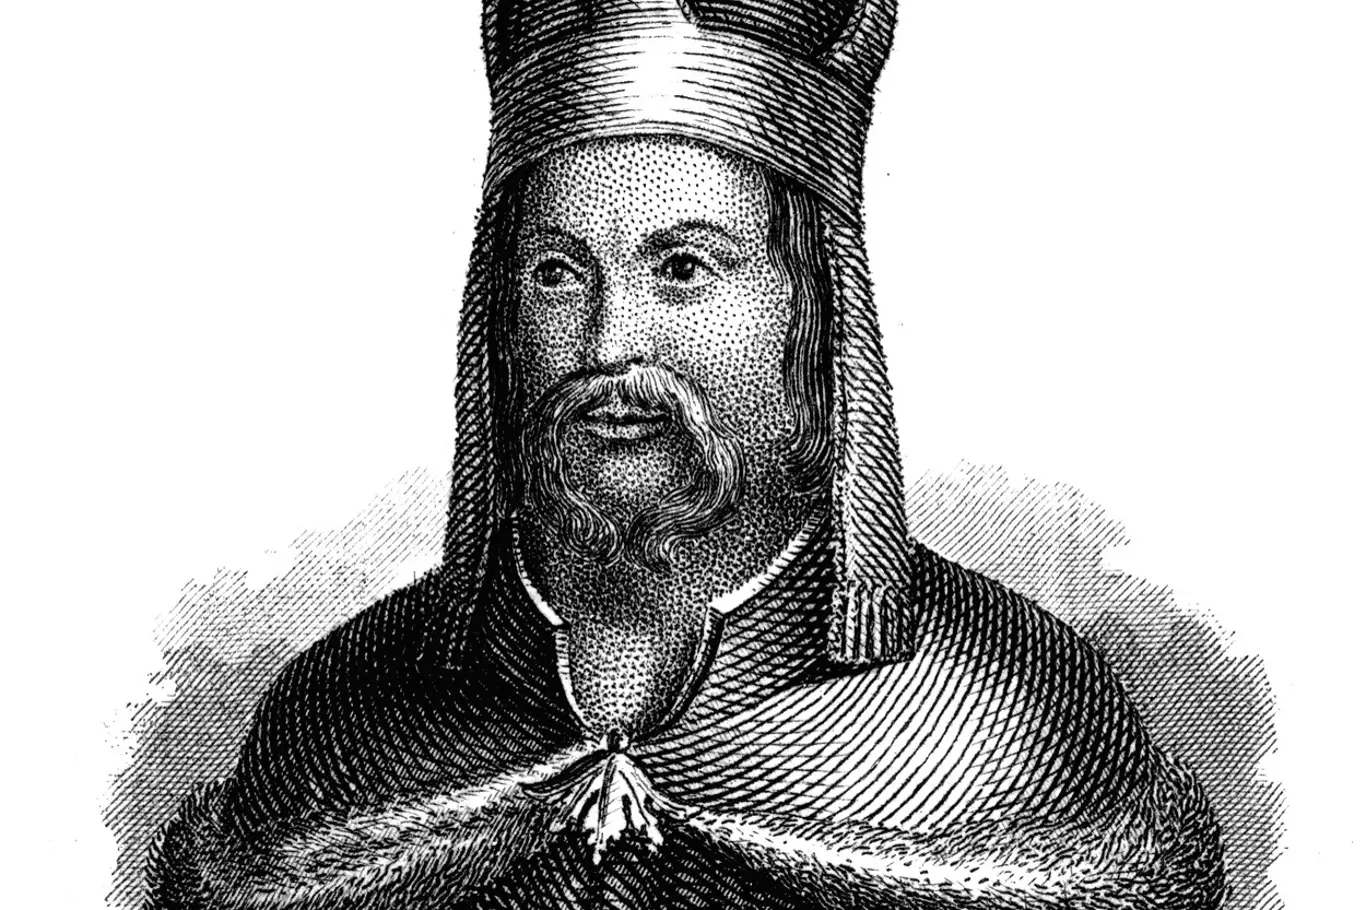 Karel IV. byl natolik oblíbený panovník, že jeho vzhledu se příliš pozornosti nepřikládalo. Jak ale vypadal?